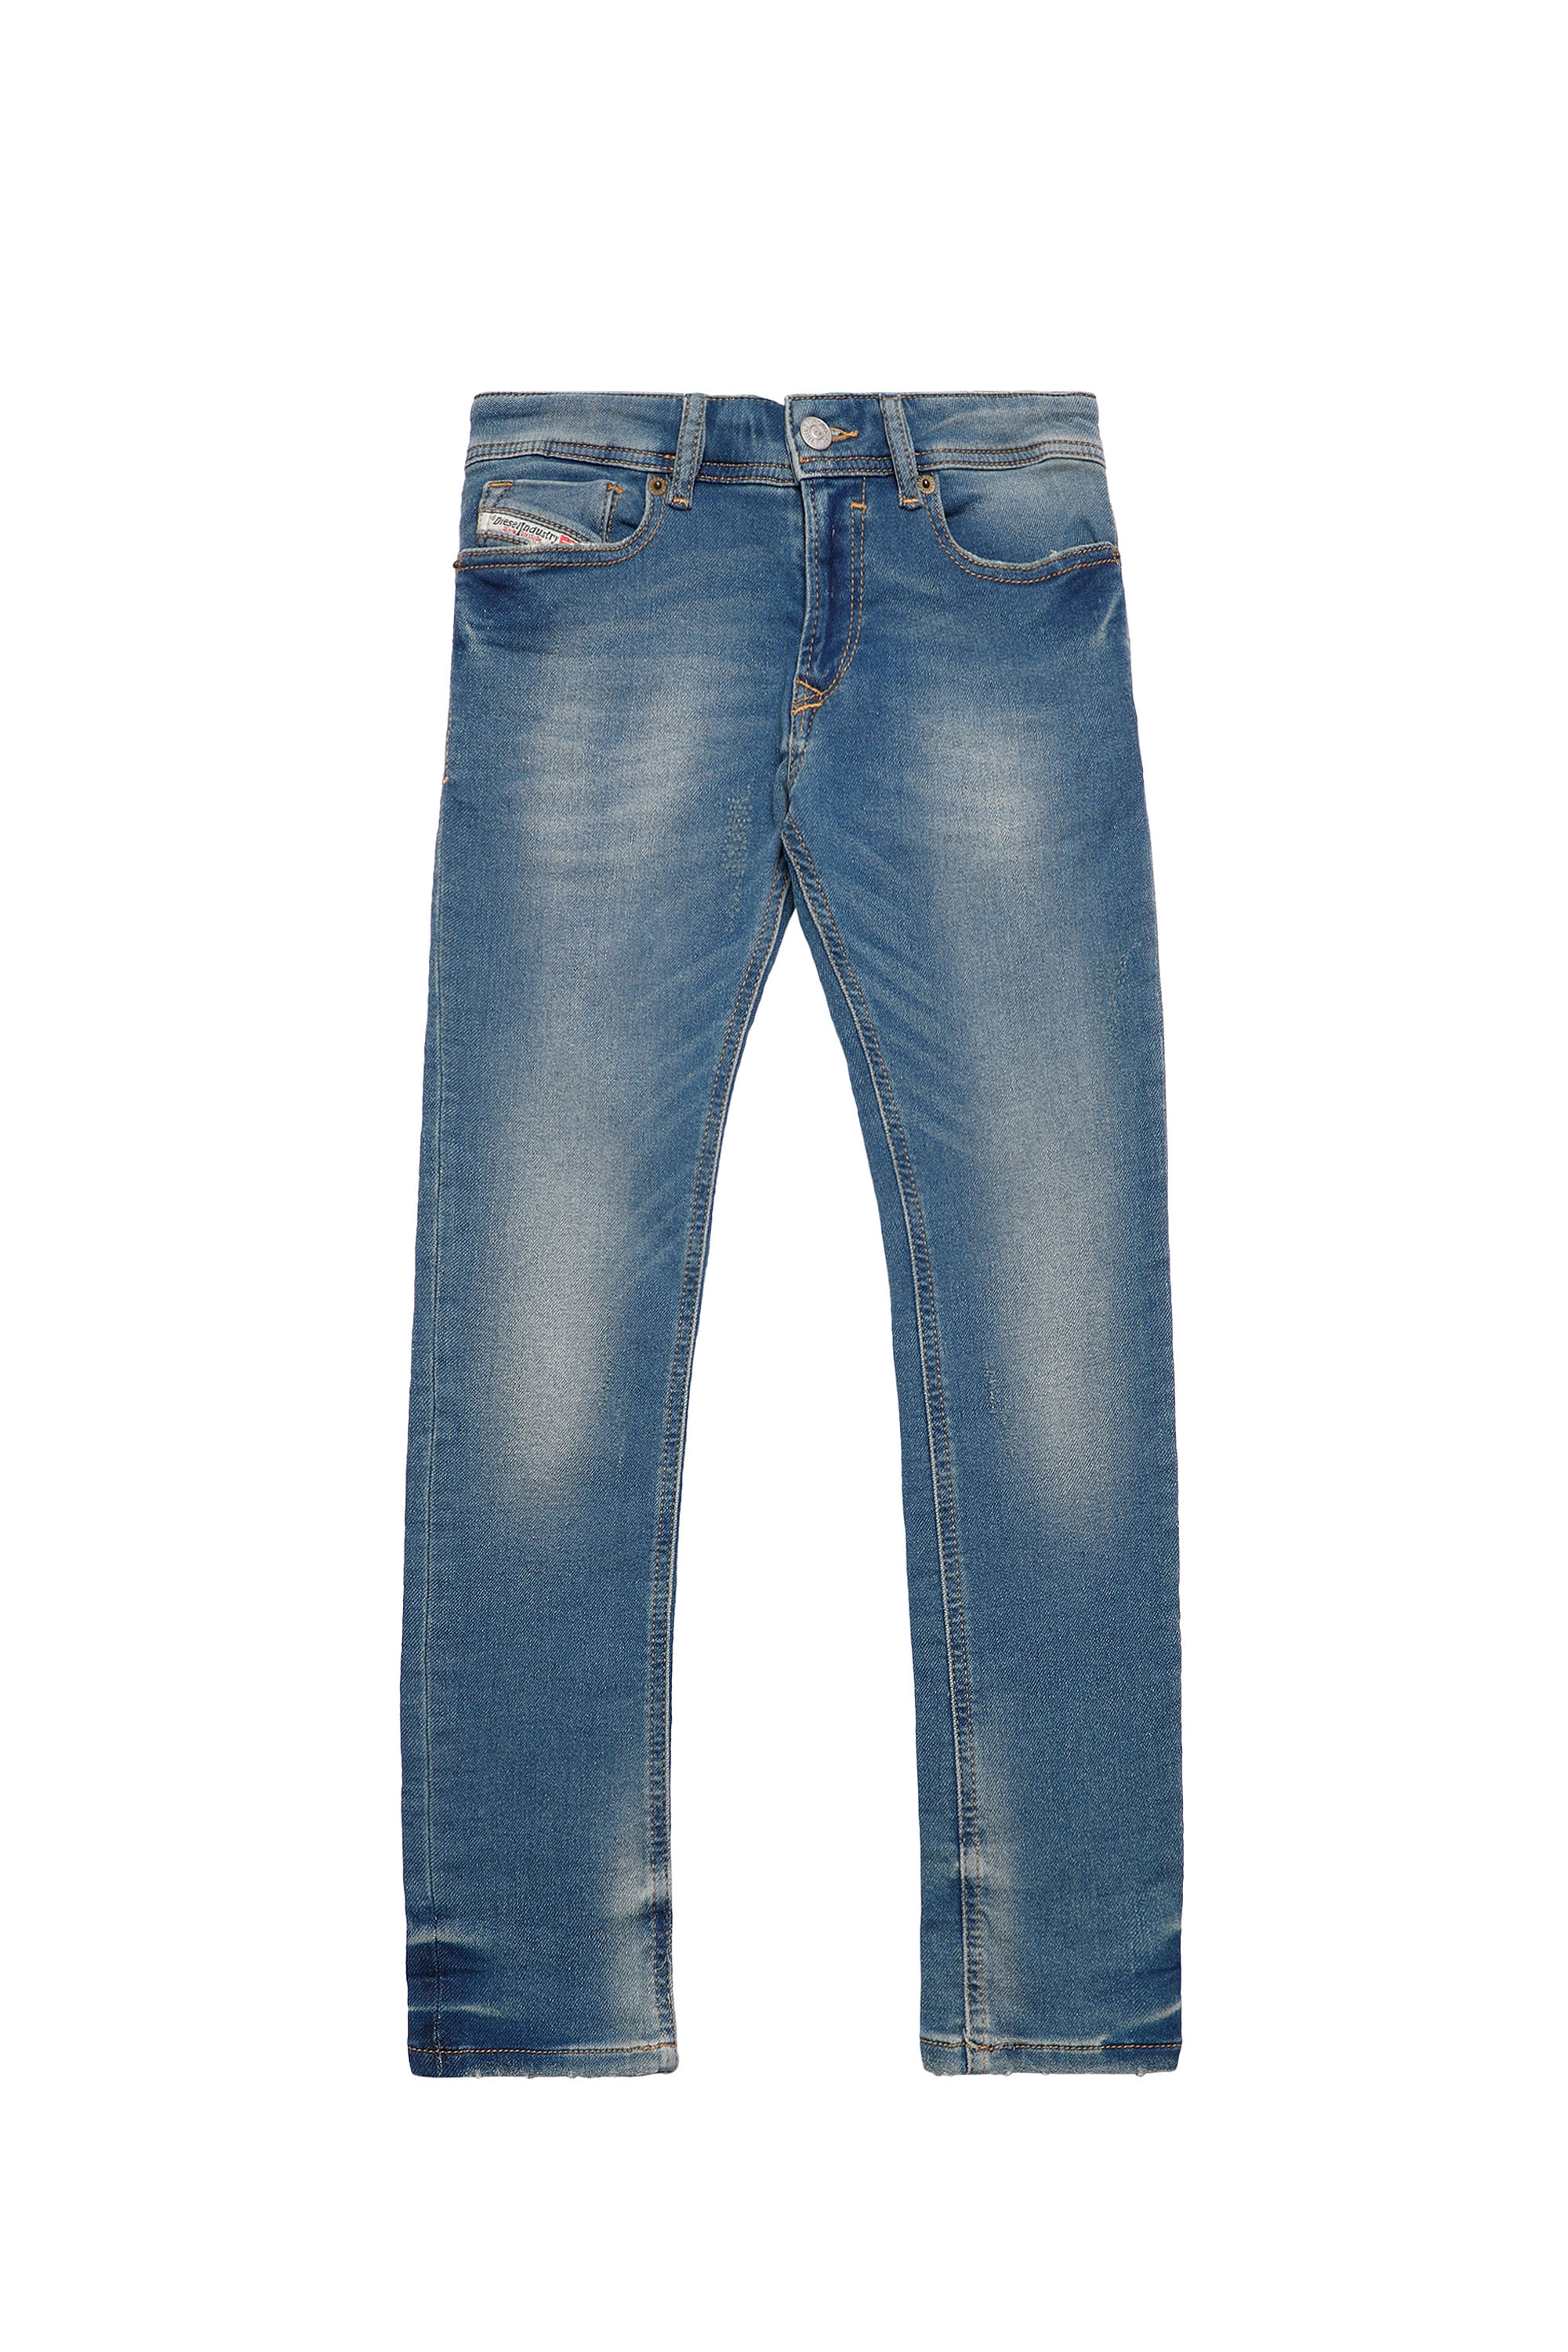 SLEENKER-J JOGGJEANS-N, Medium blue - Jeans